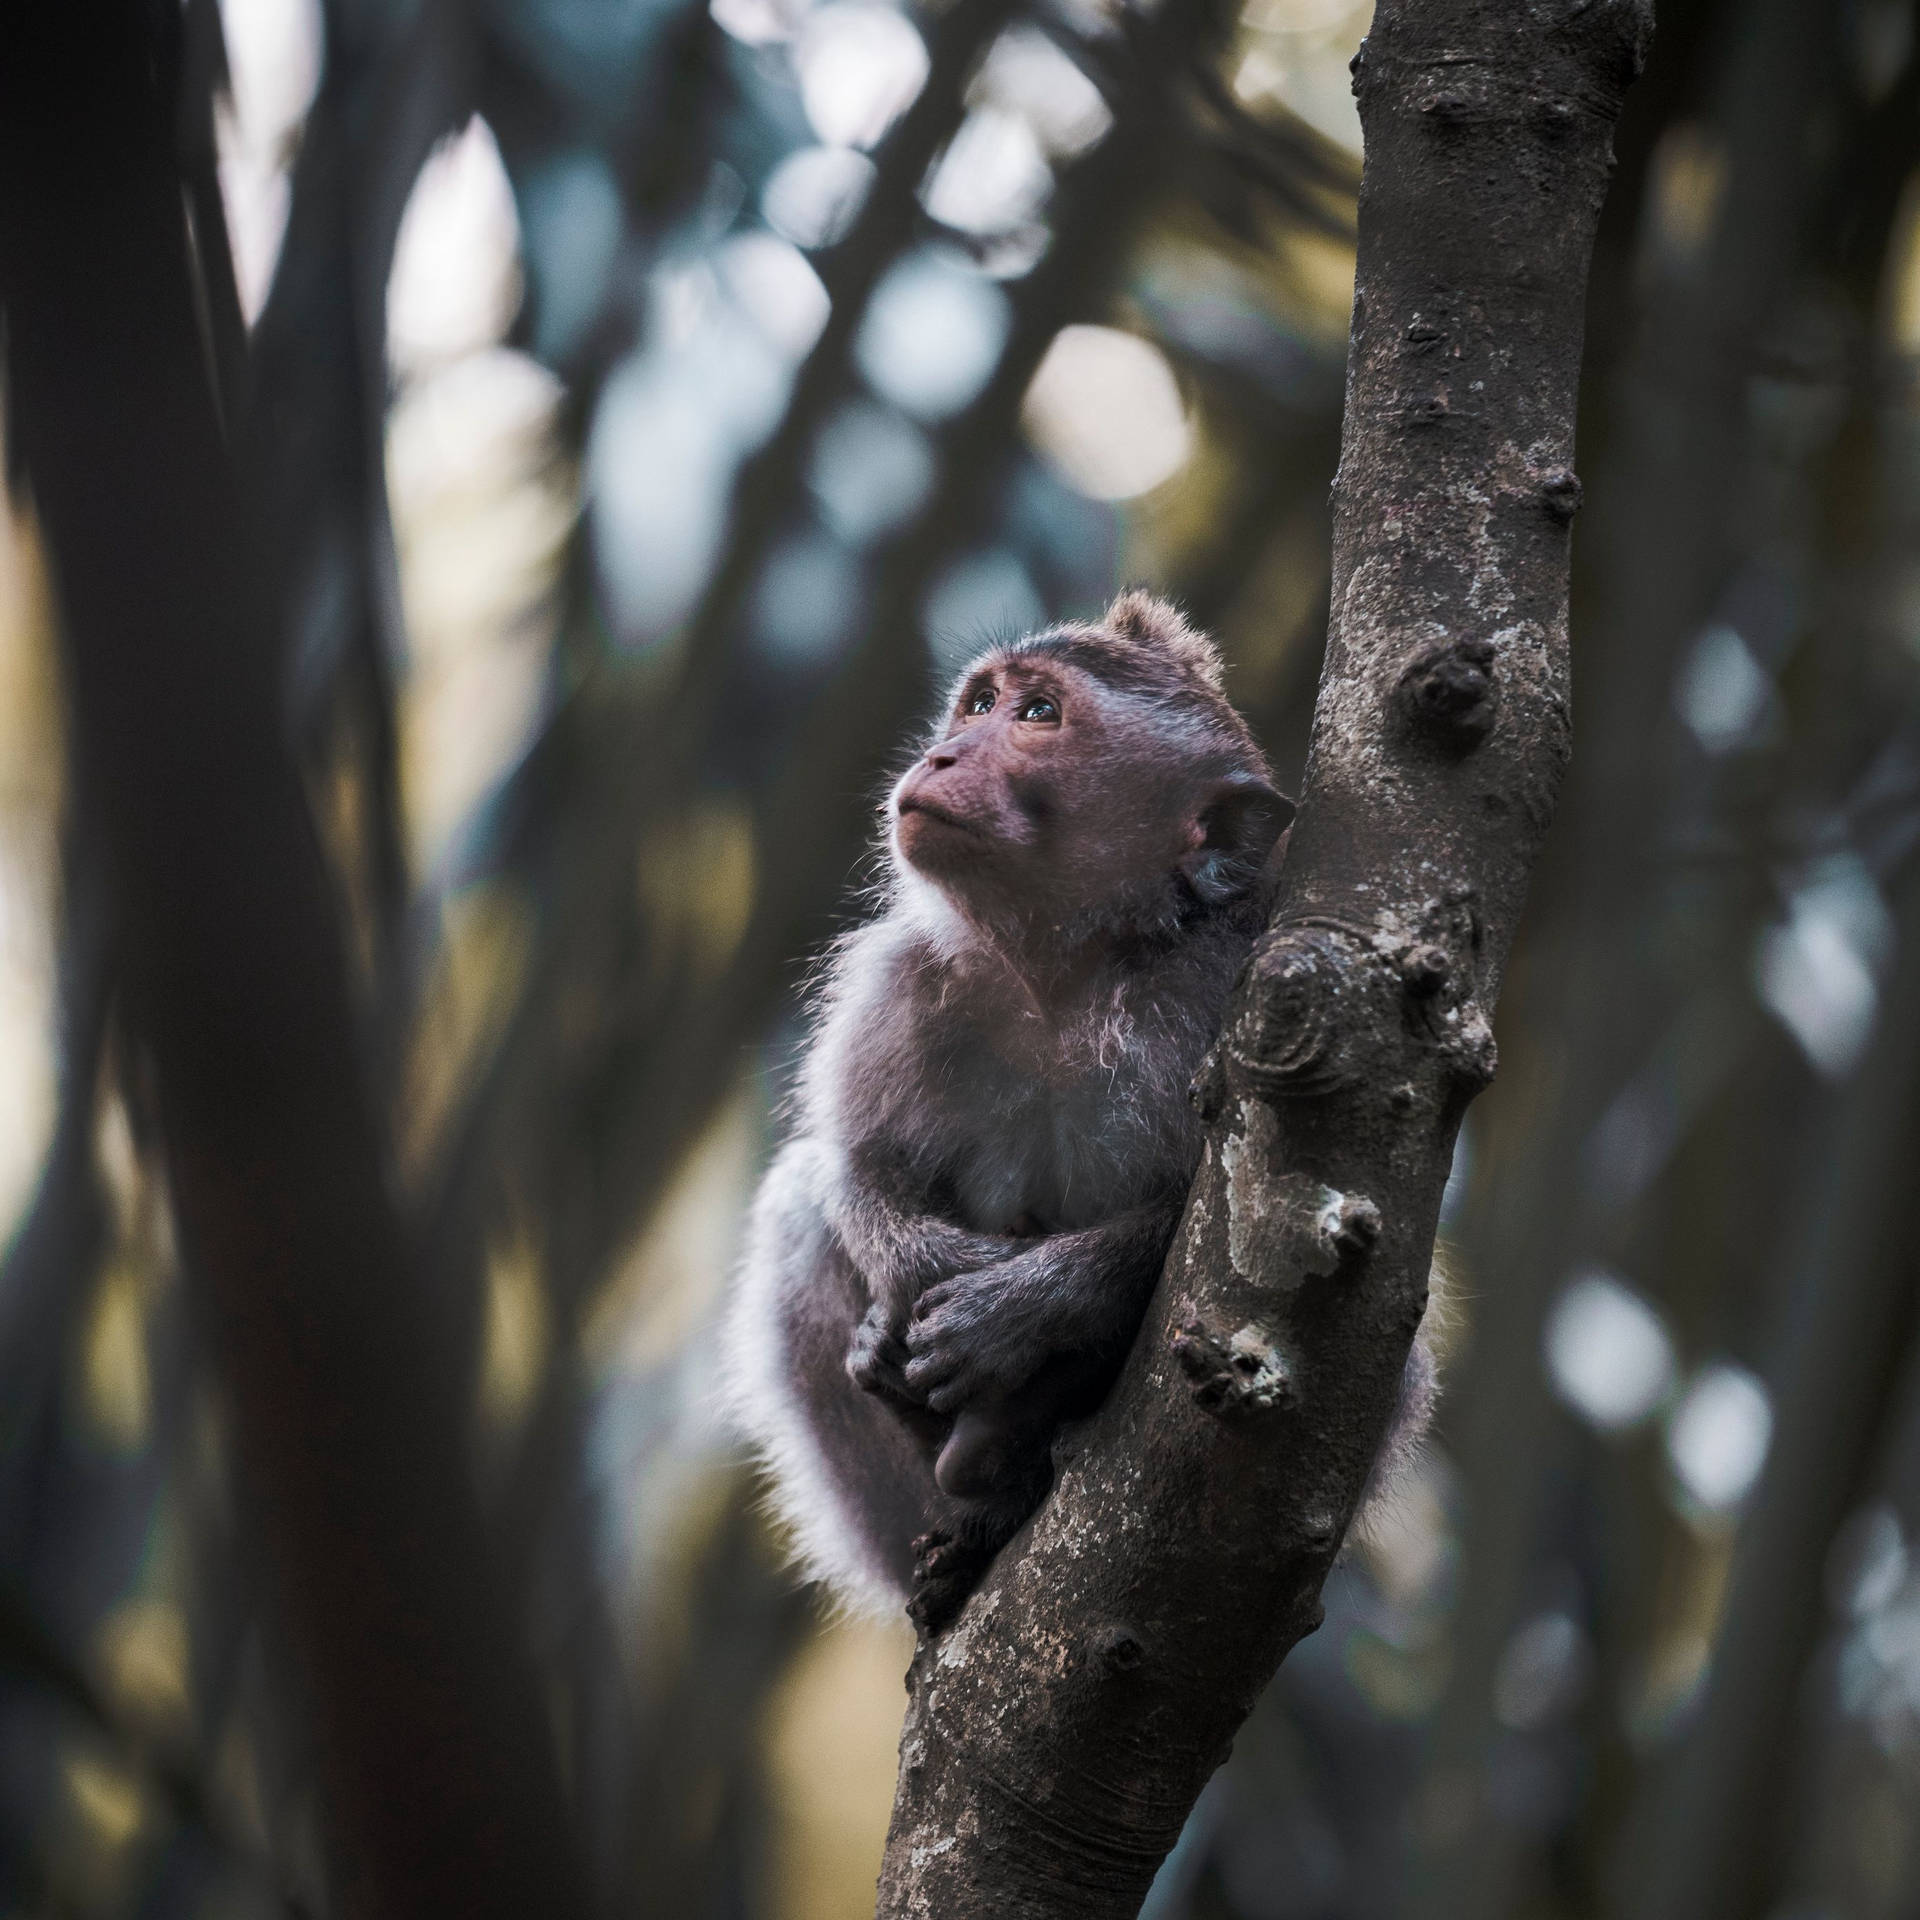 Cute Monkey On Tree Branch